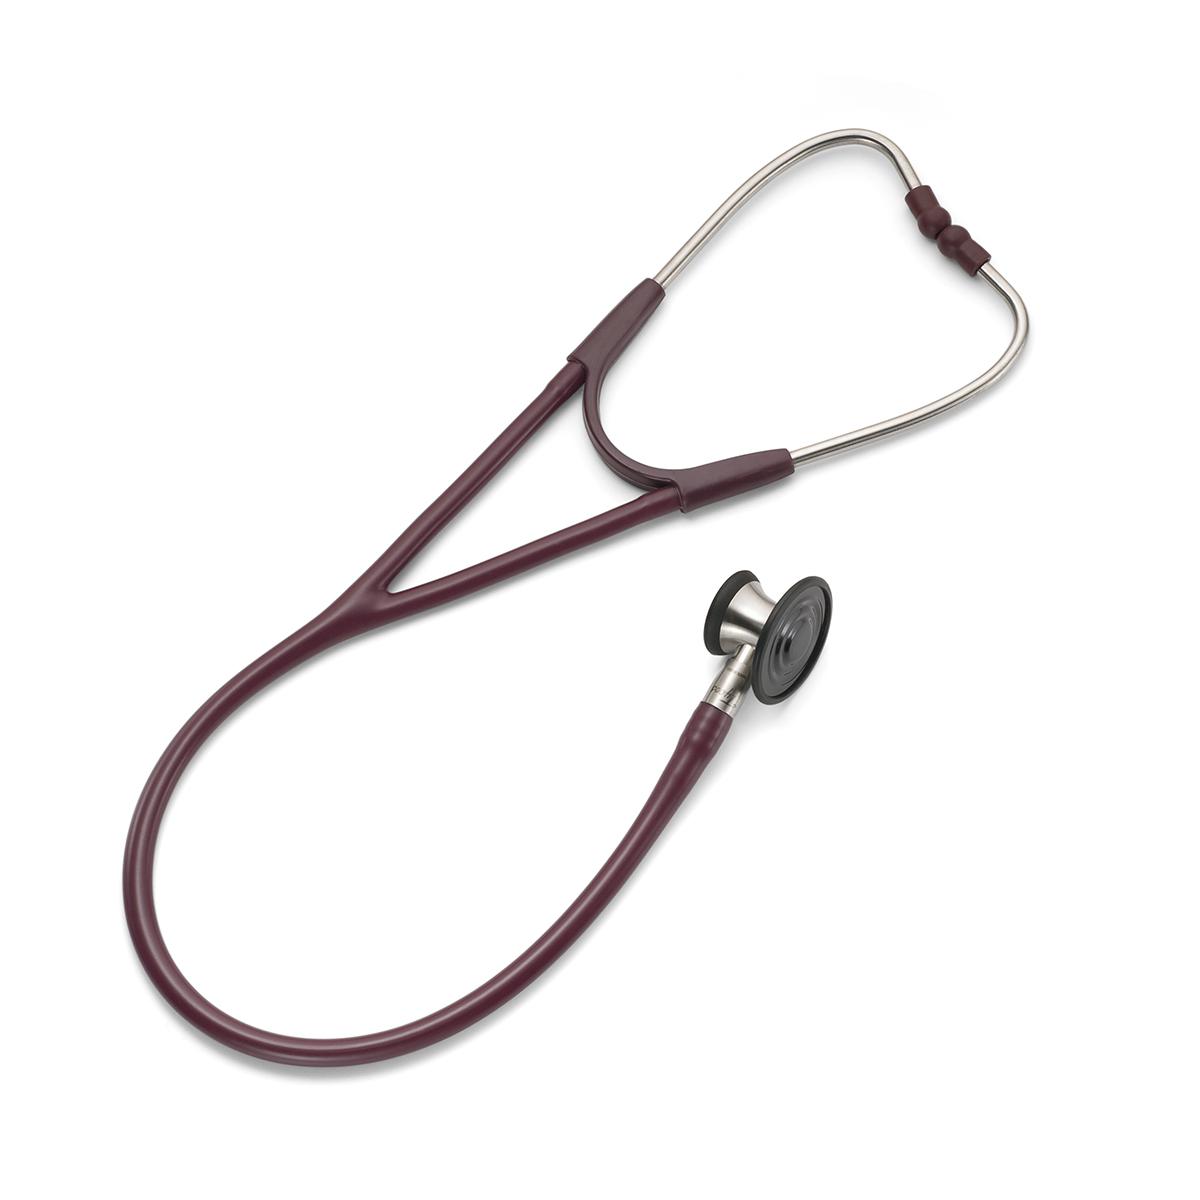 Stetoscopio Harvey Elite Welch Allyn per uso veterinario: doppia testina di profilo, che ne evidenzia il lato a campana e il lato piatto.